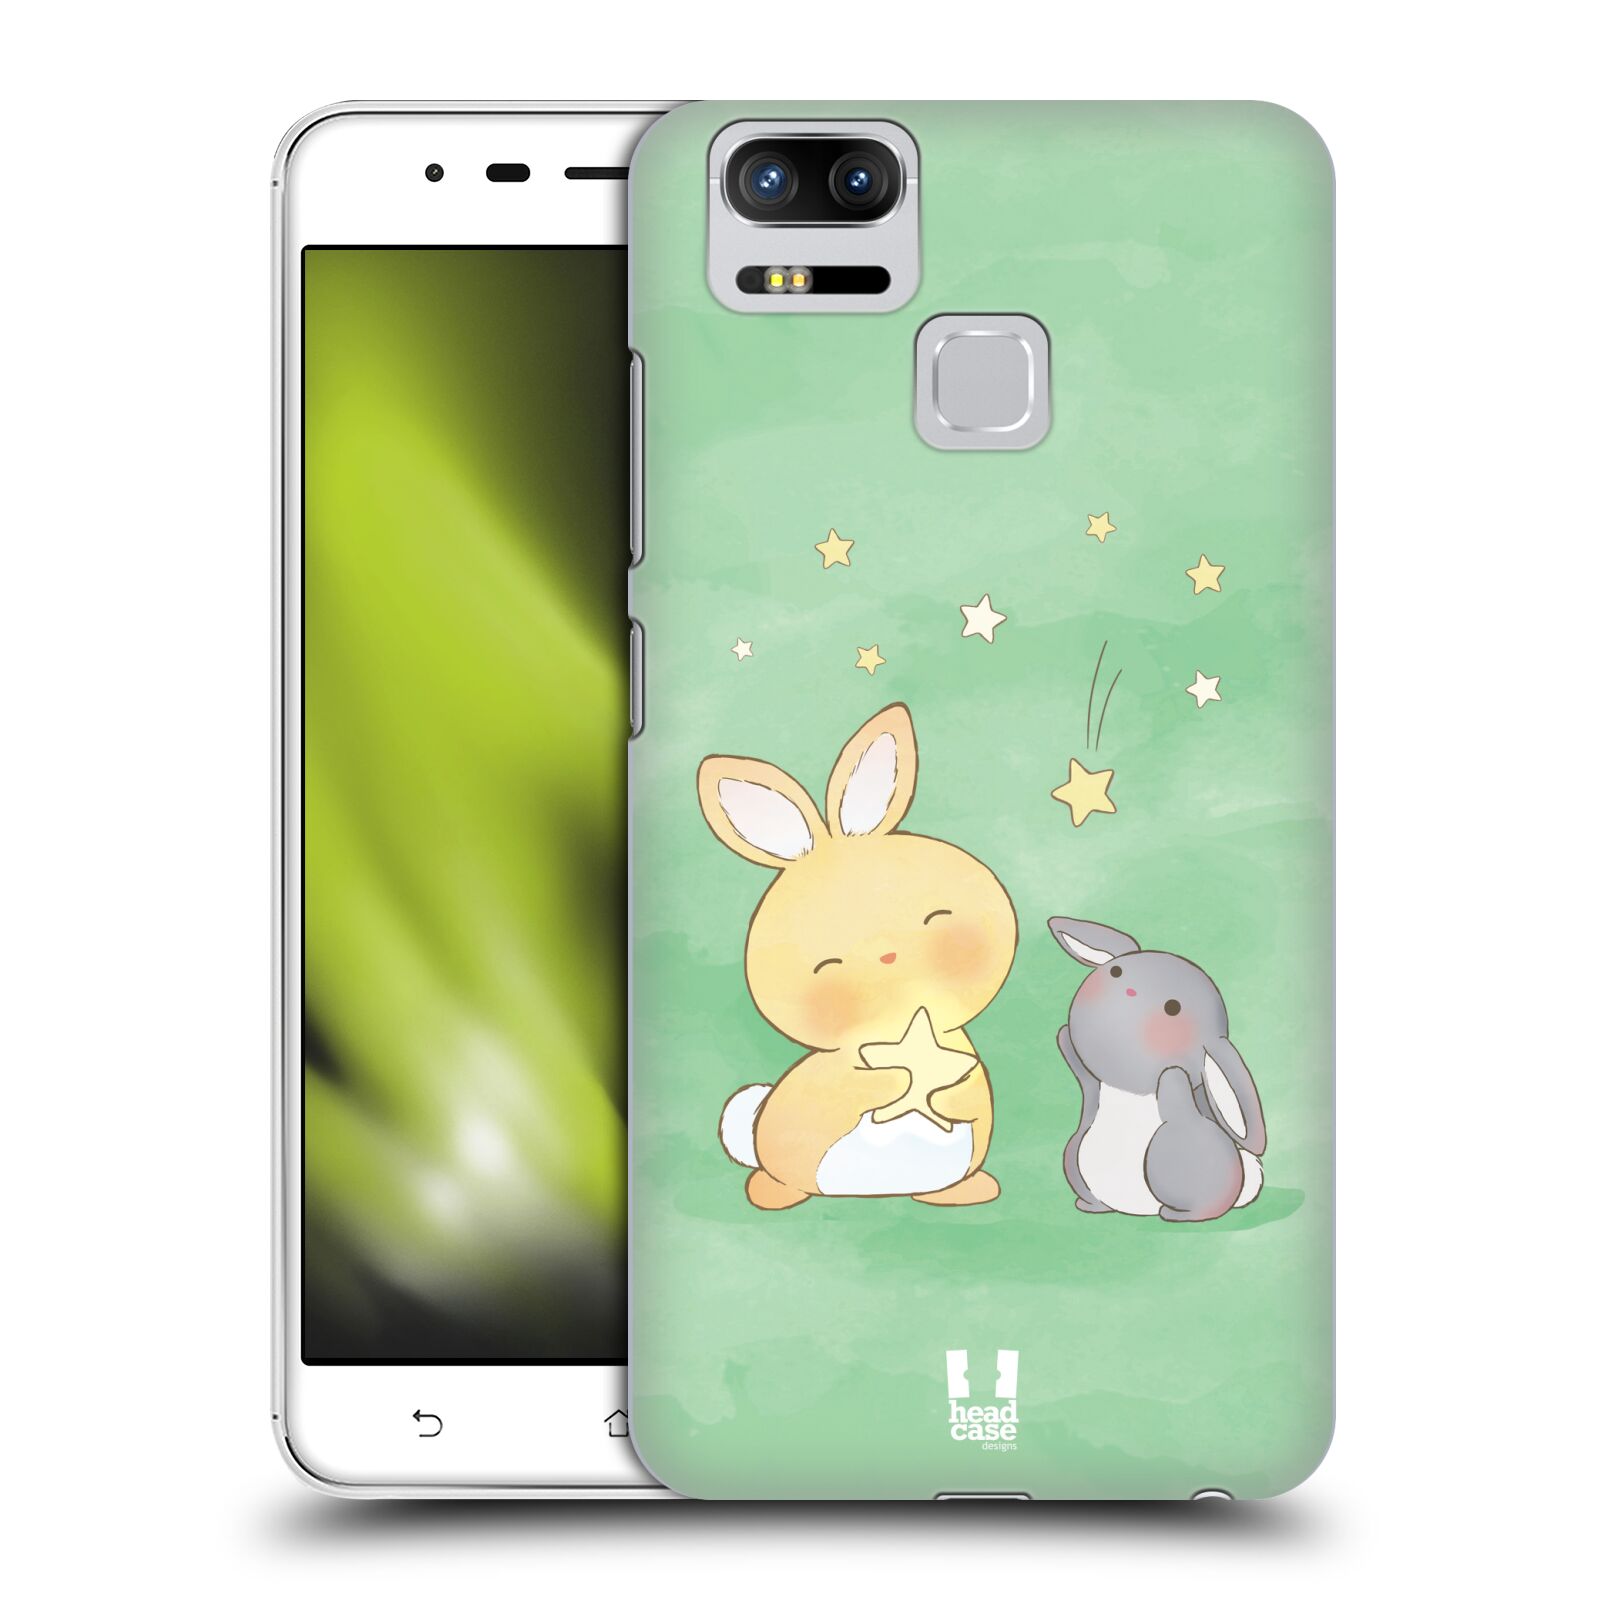 HEAD CASE plastový obal na mobil Asus Zenfone 3 Zoom ZE553KL vzor králíček a hvězdy zelená